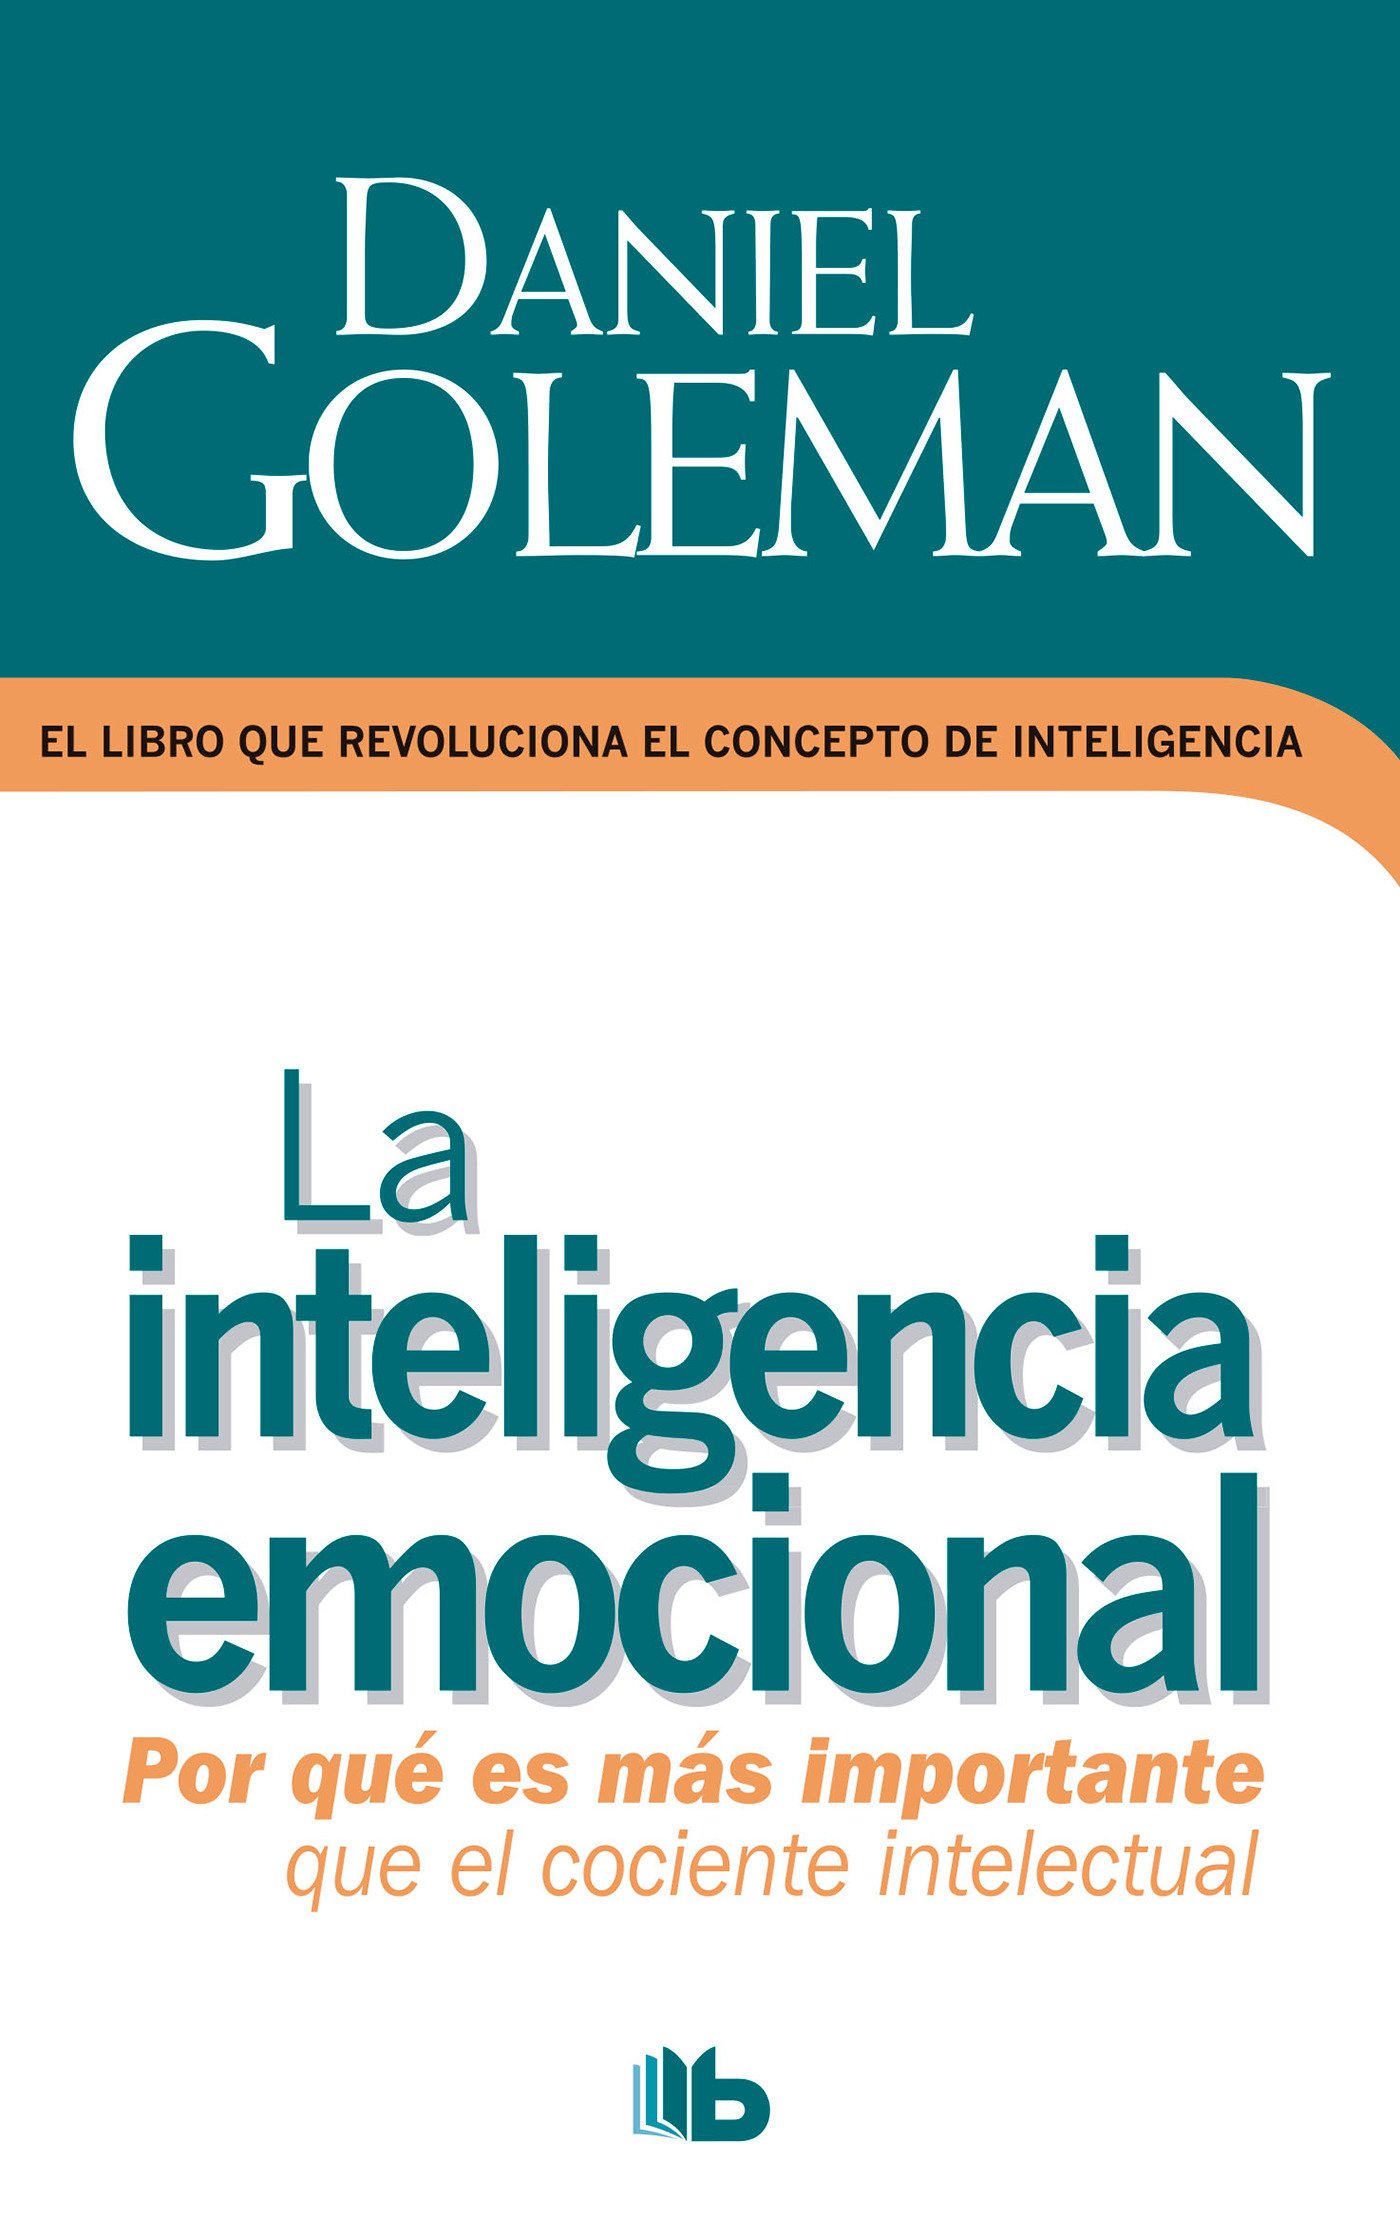 libros y revistas - inteligencia emocio nal p d f